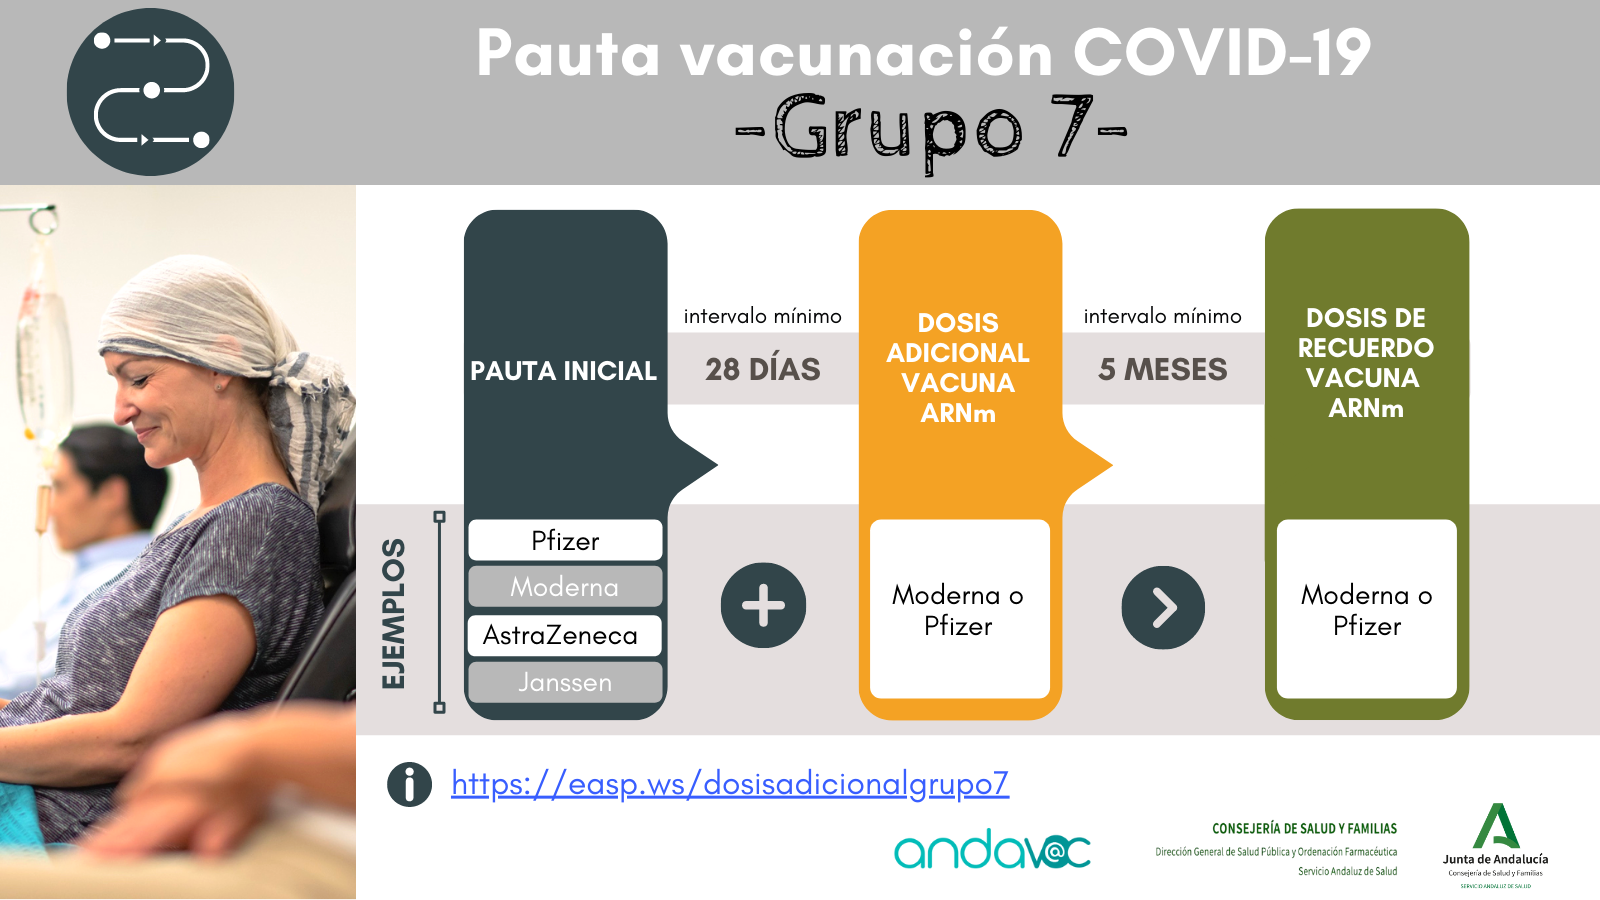 Pauta vacunación COVID-19 para personas en Grupo7